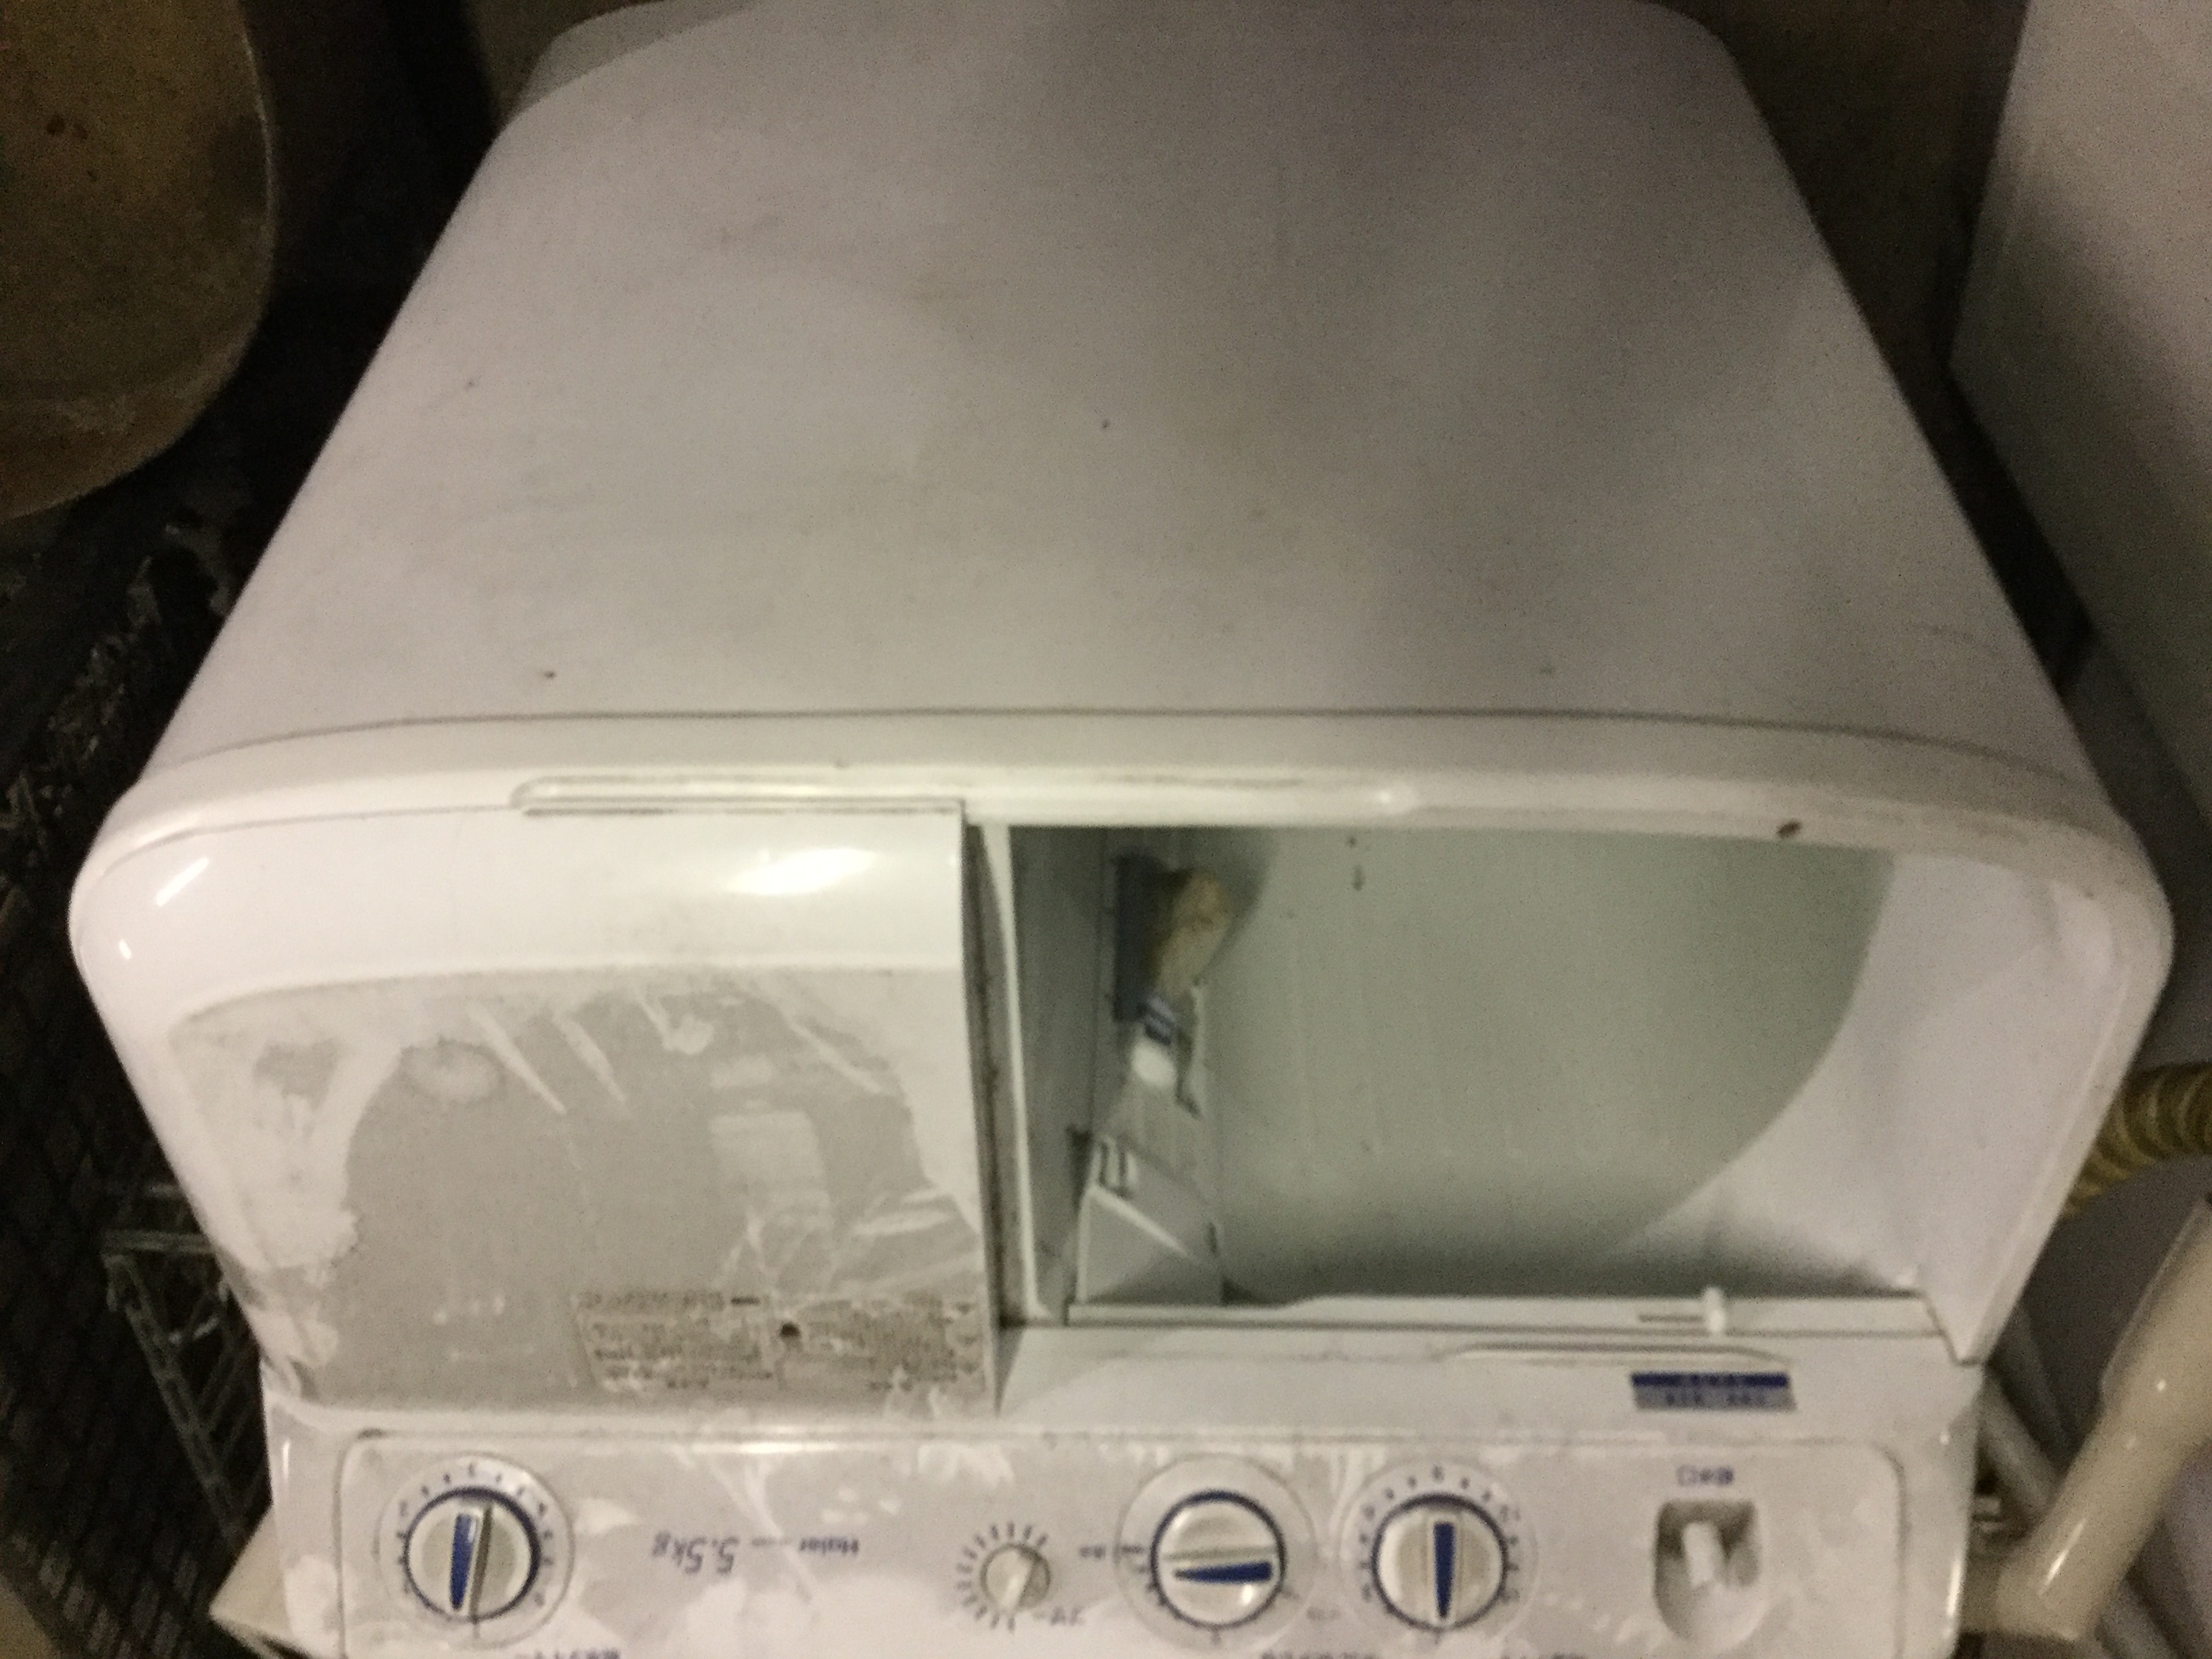 二層式洗濯機